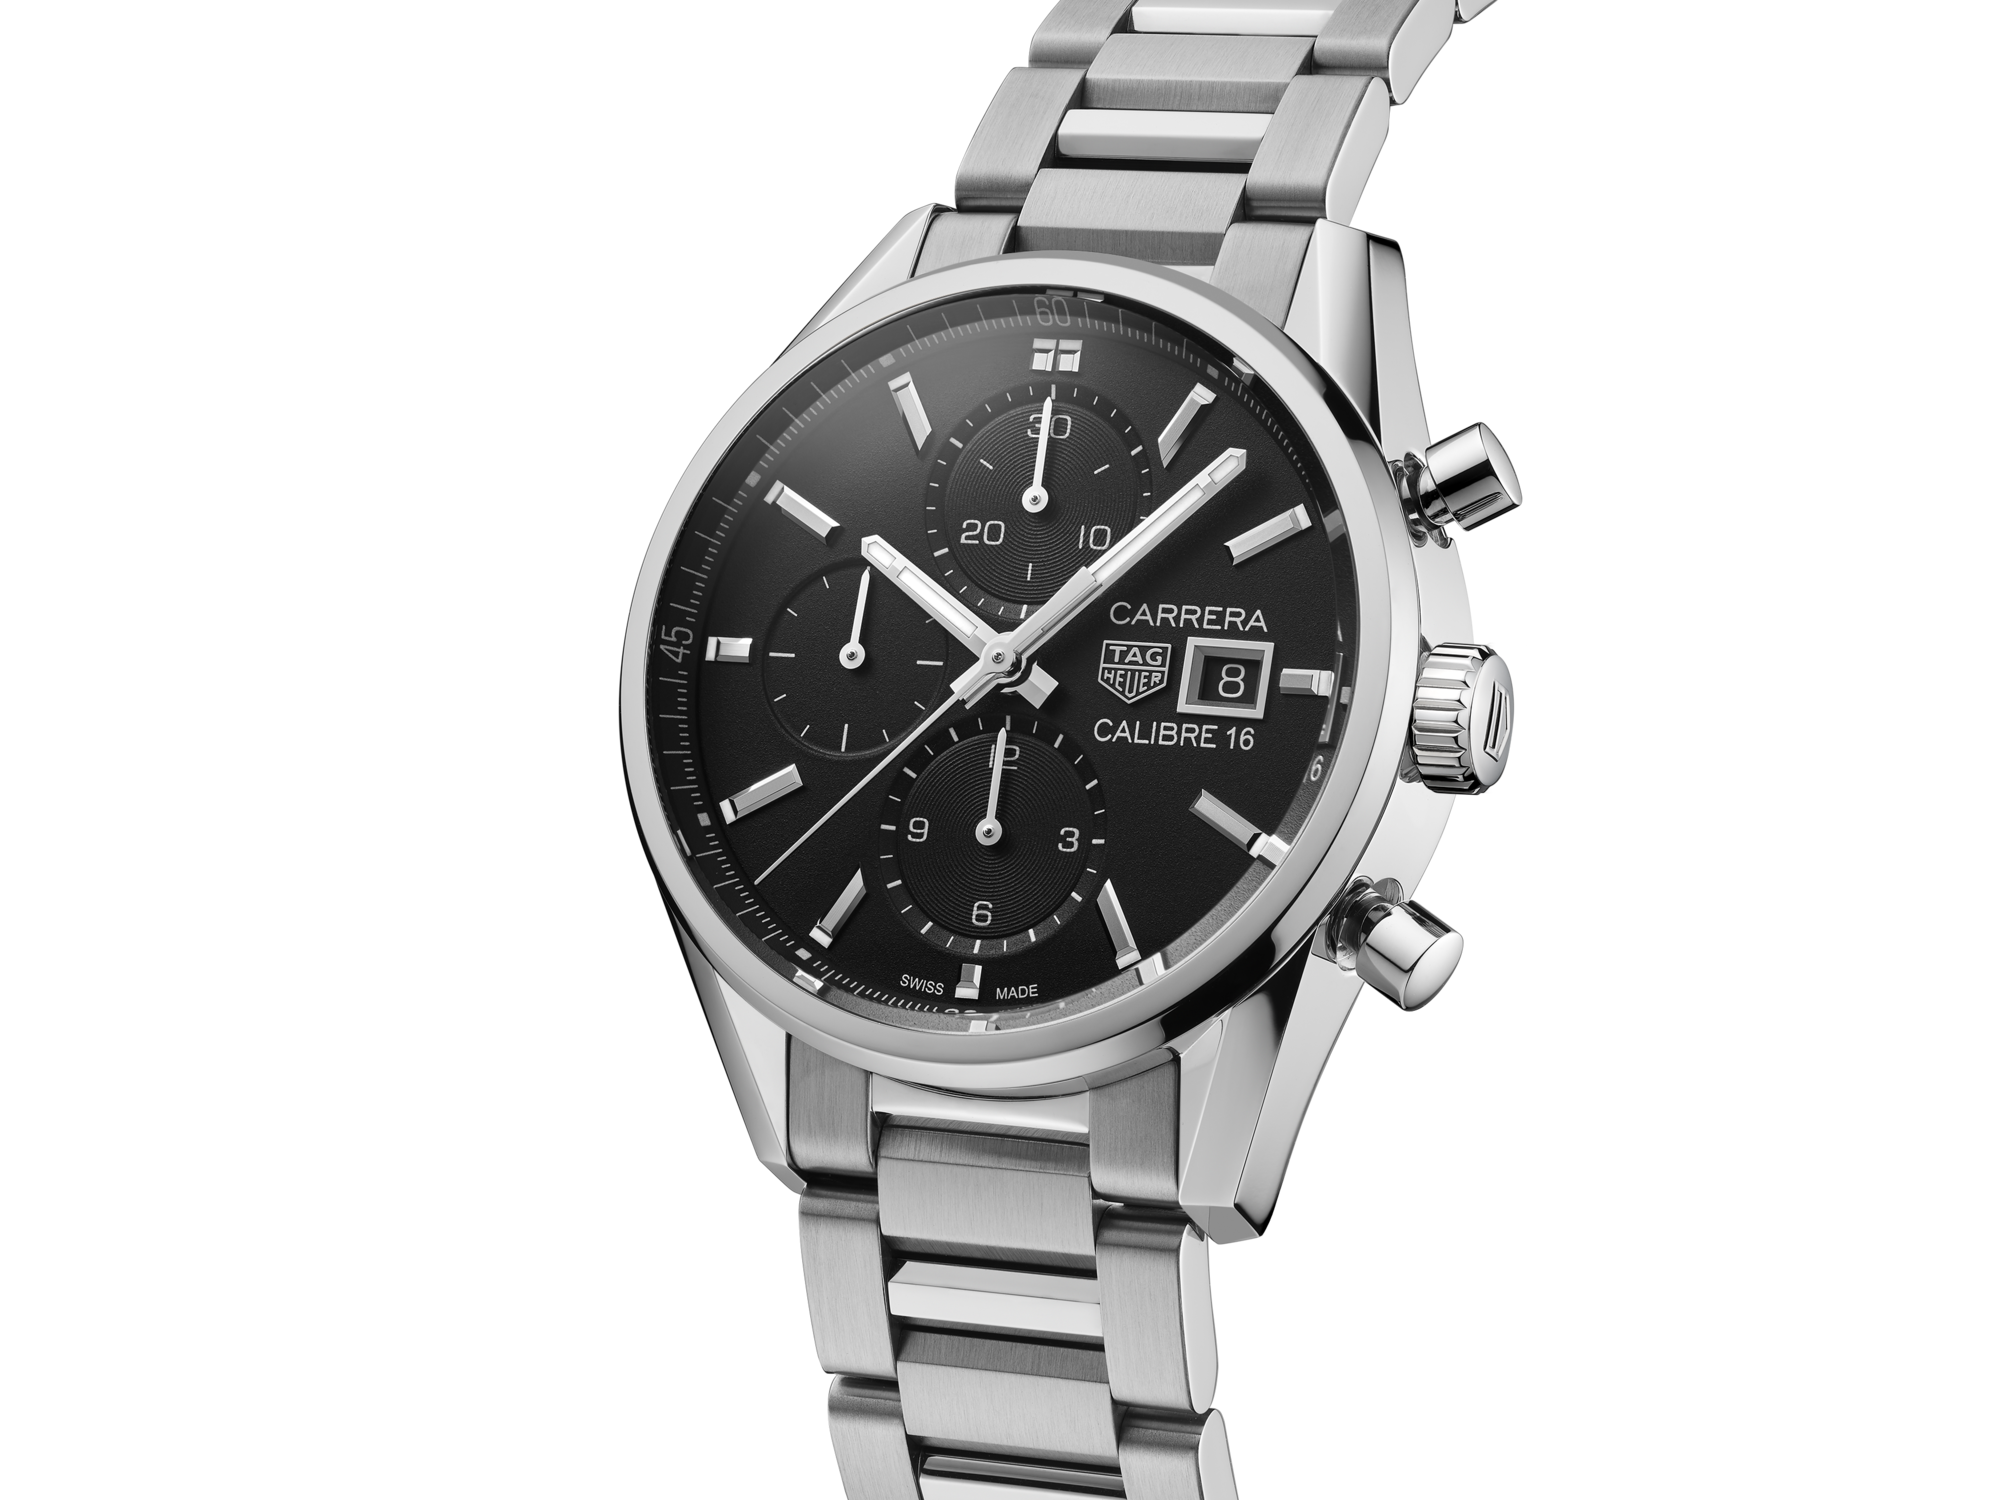 タグホイヤー TAG HEUER メンズ腕時計 カレラ クロノグラフ 【あす楽対応_東海】 メンズ腕時計